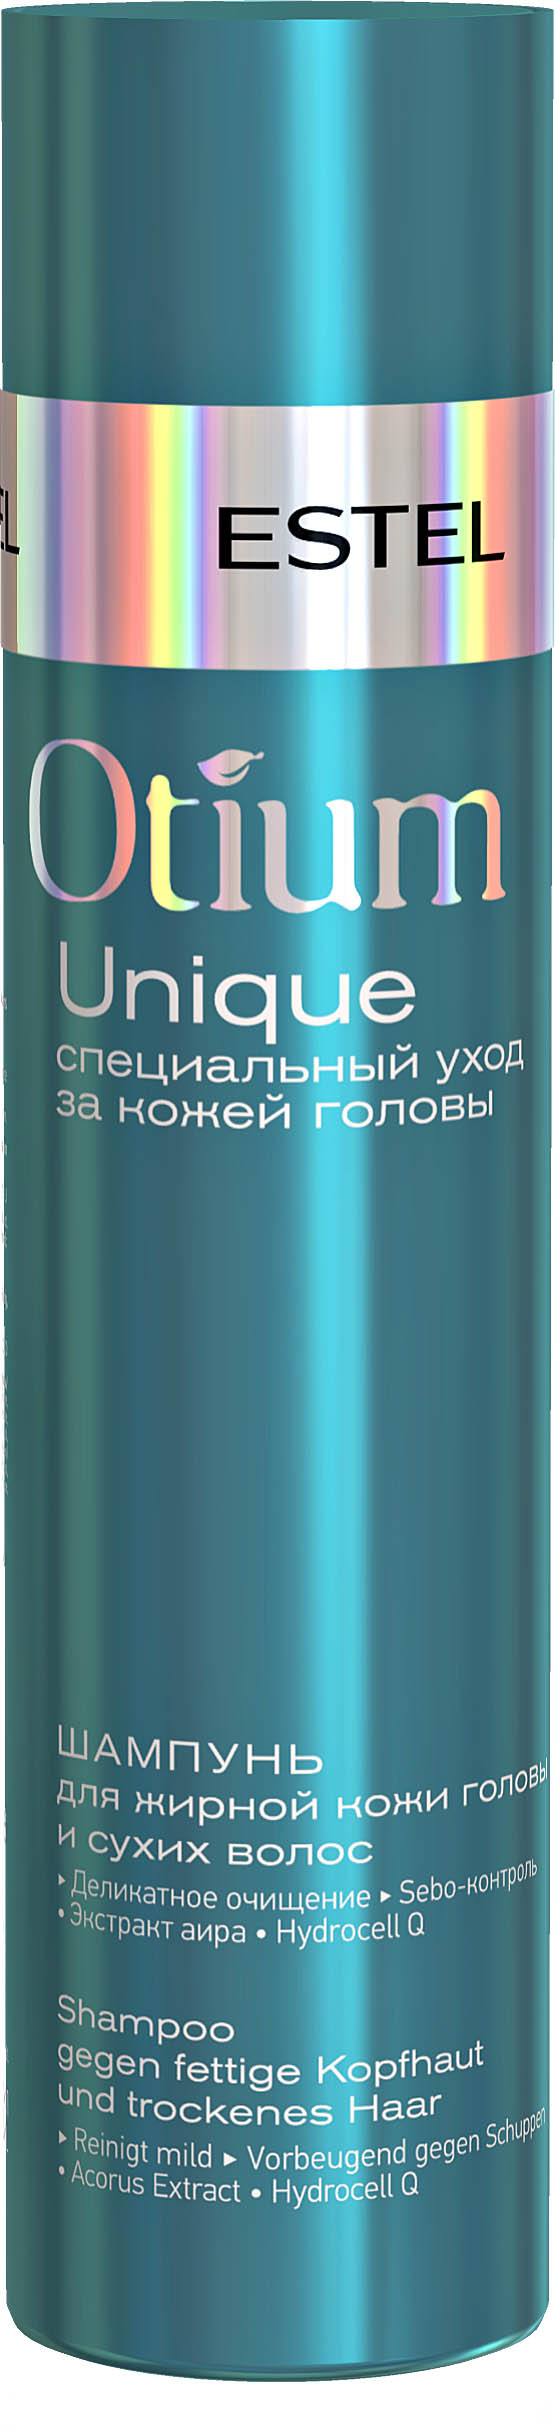 Шампунь для жирной кожи головы и сухих волос OTIUM UNIQUE, 250 мл